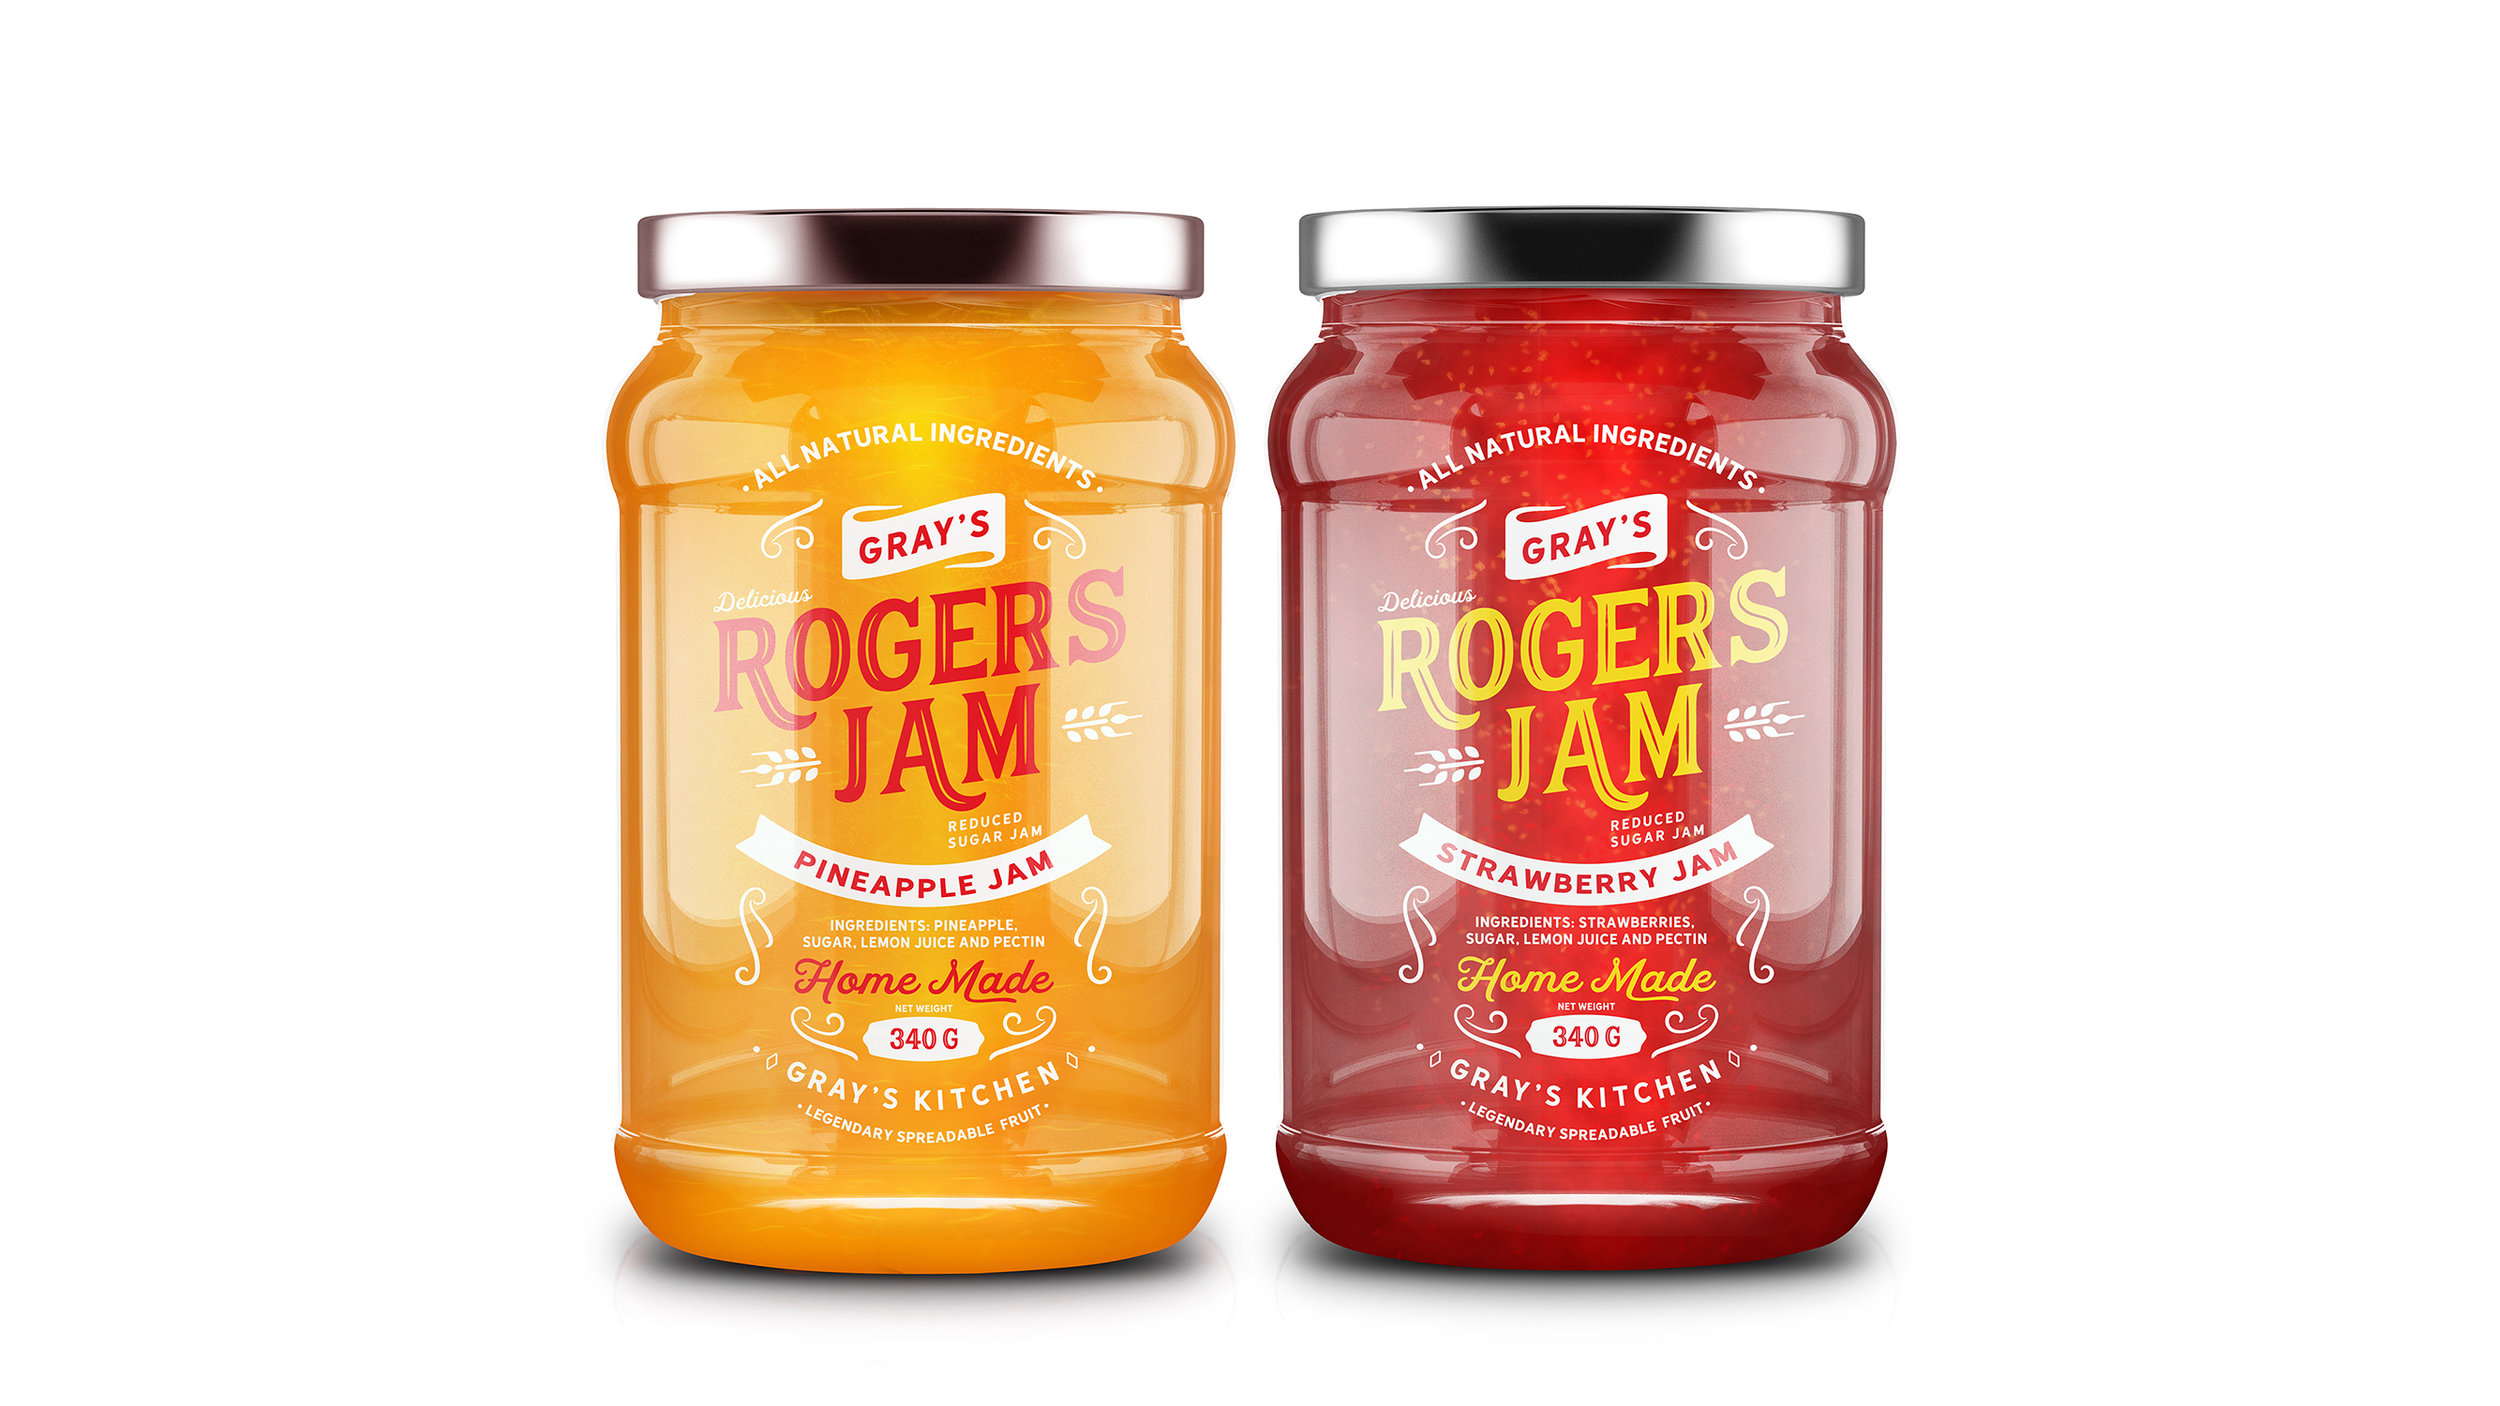 Roger’s Jam Packaging Design